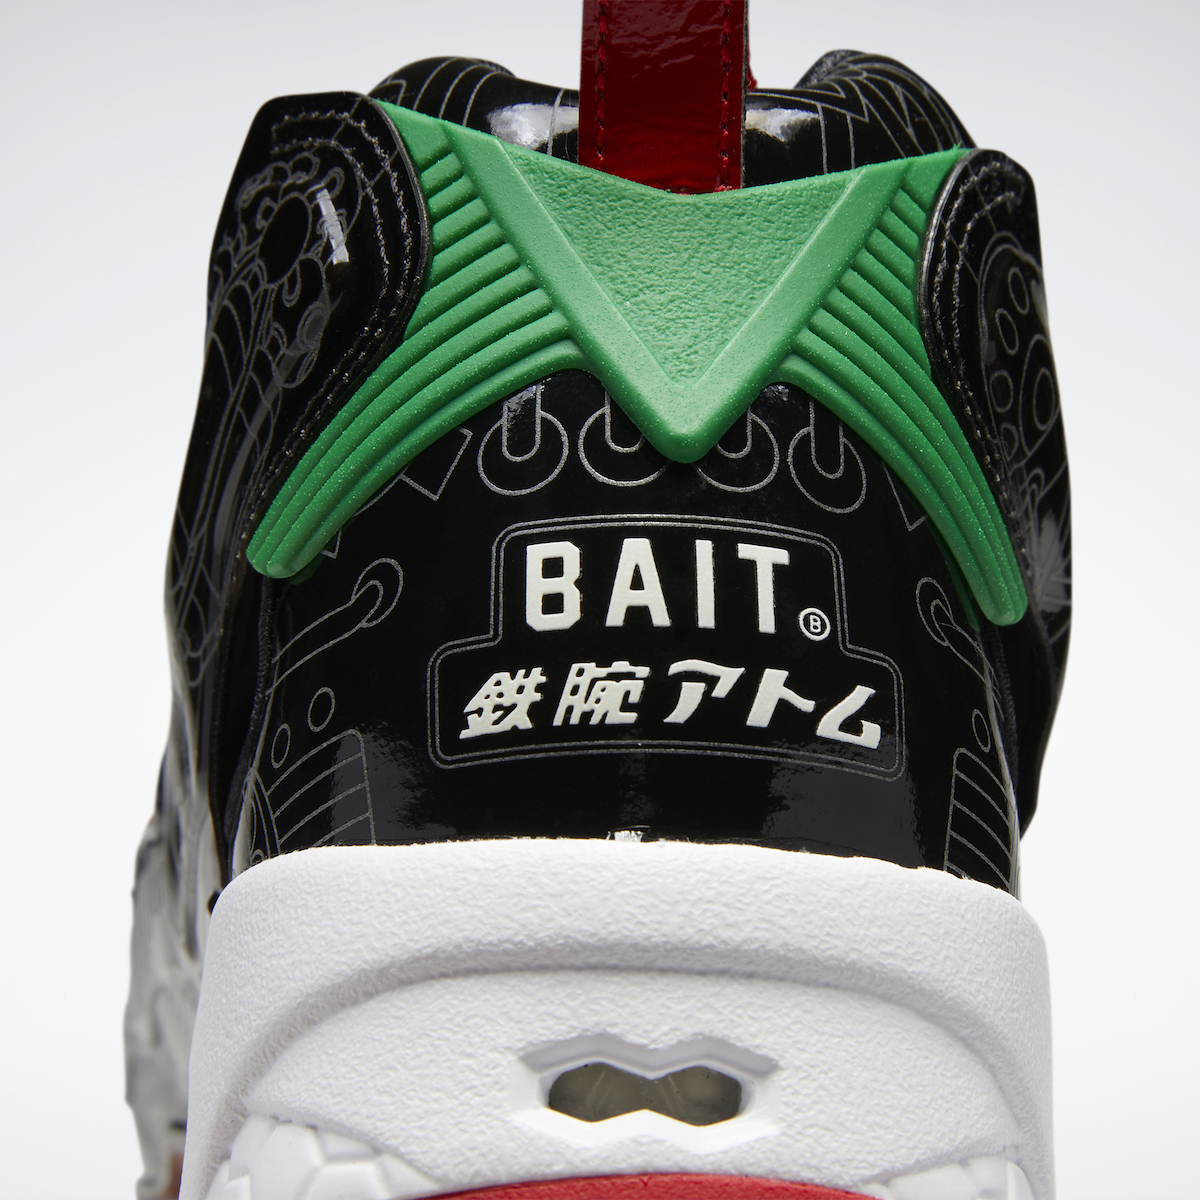 BAIT Astro Boy Reebok Instapump Fury GY8470 Release Date